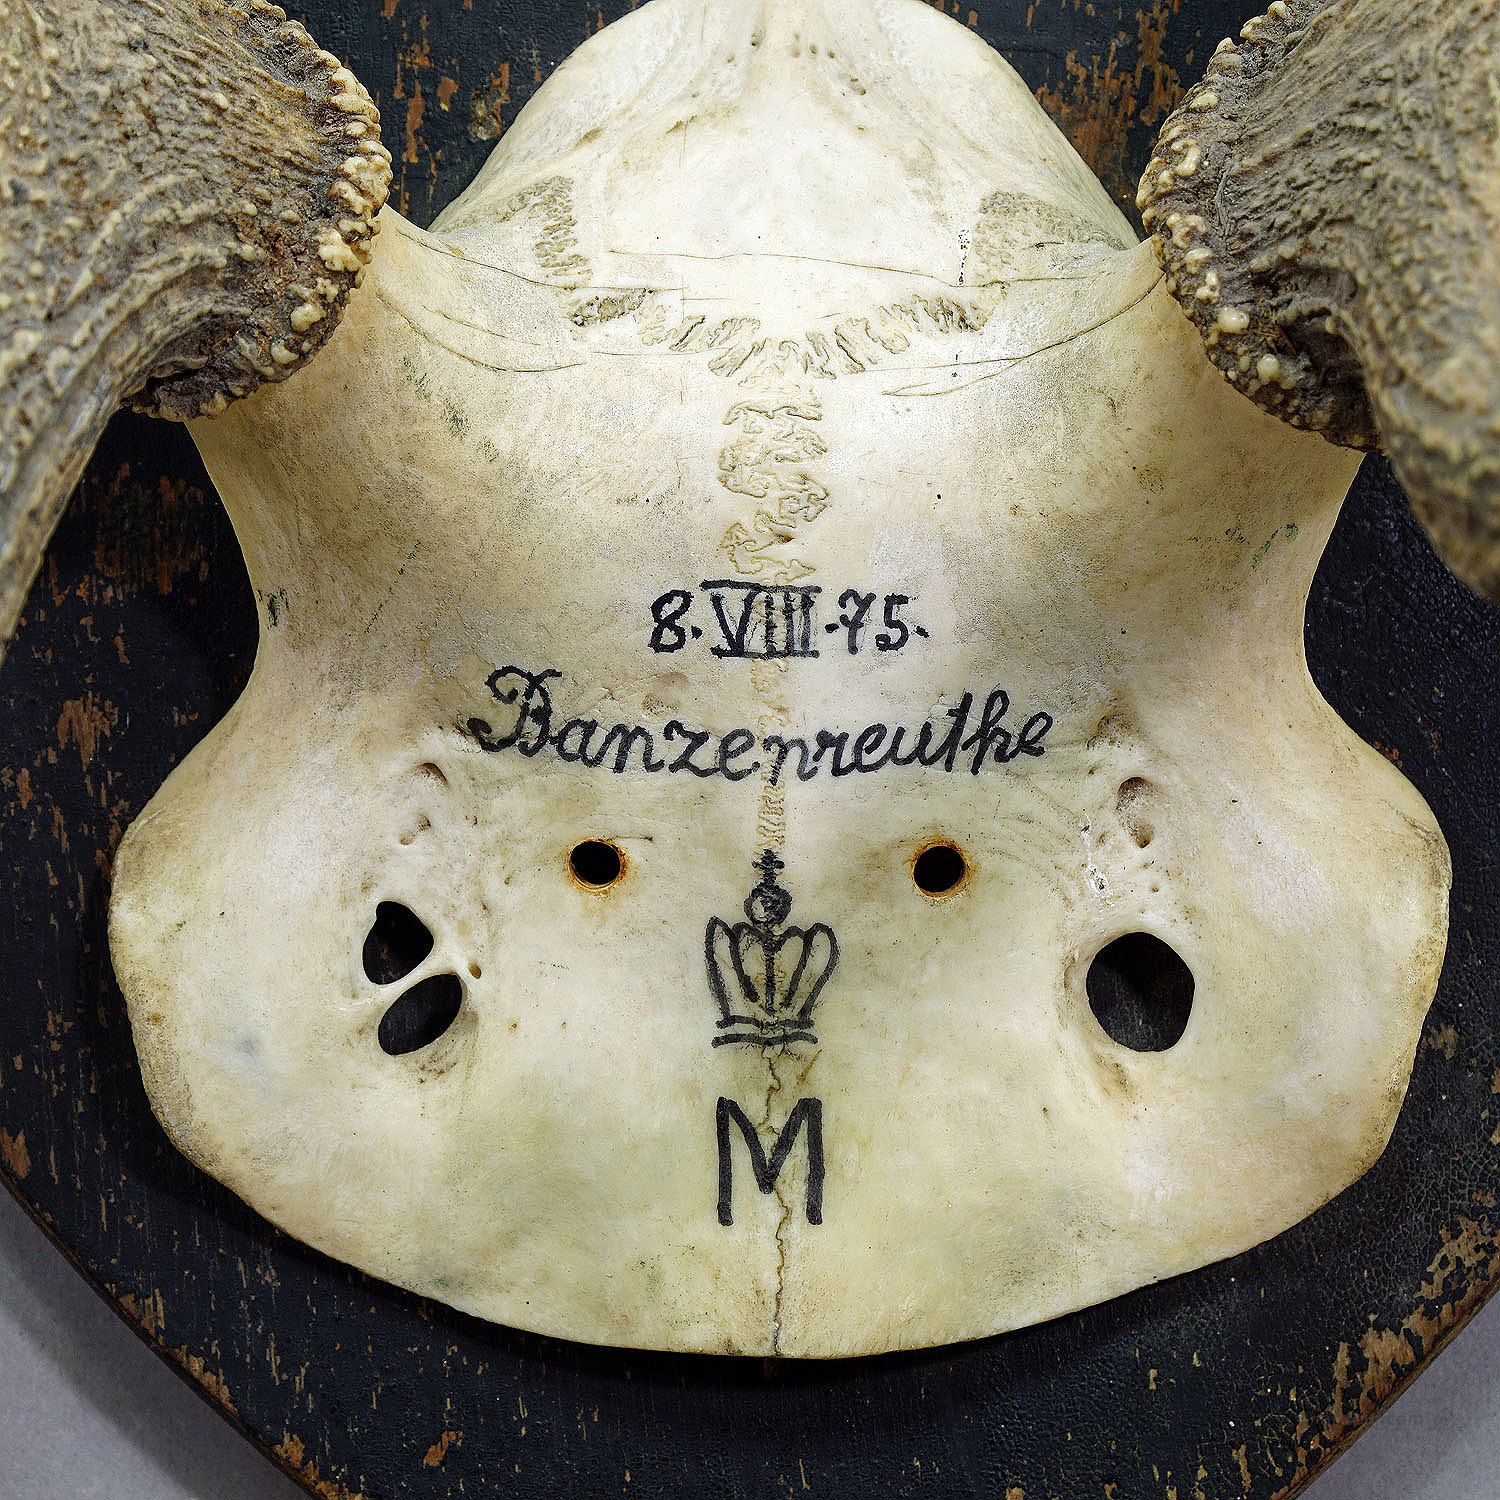 Antique Black Forest Deer Trophy from Salem - Germany, Banzenreuthe 1875